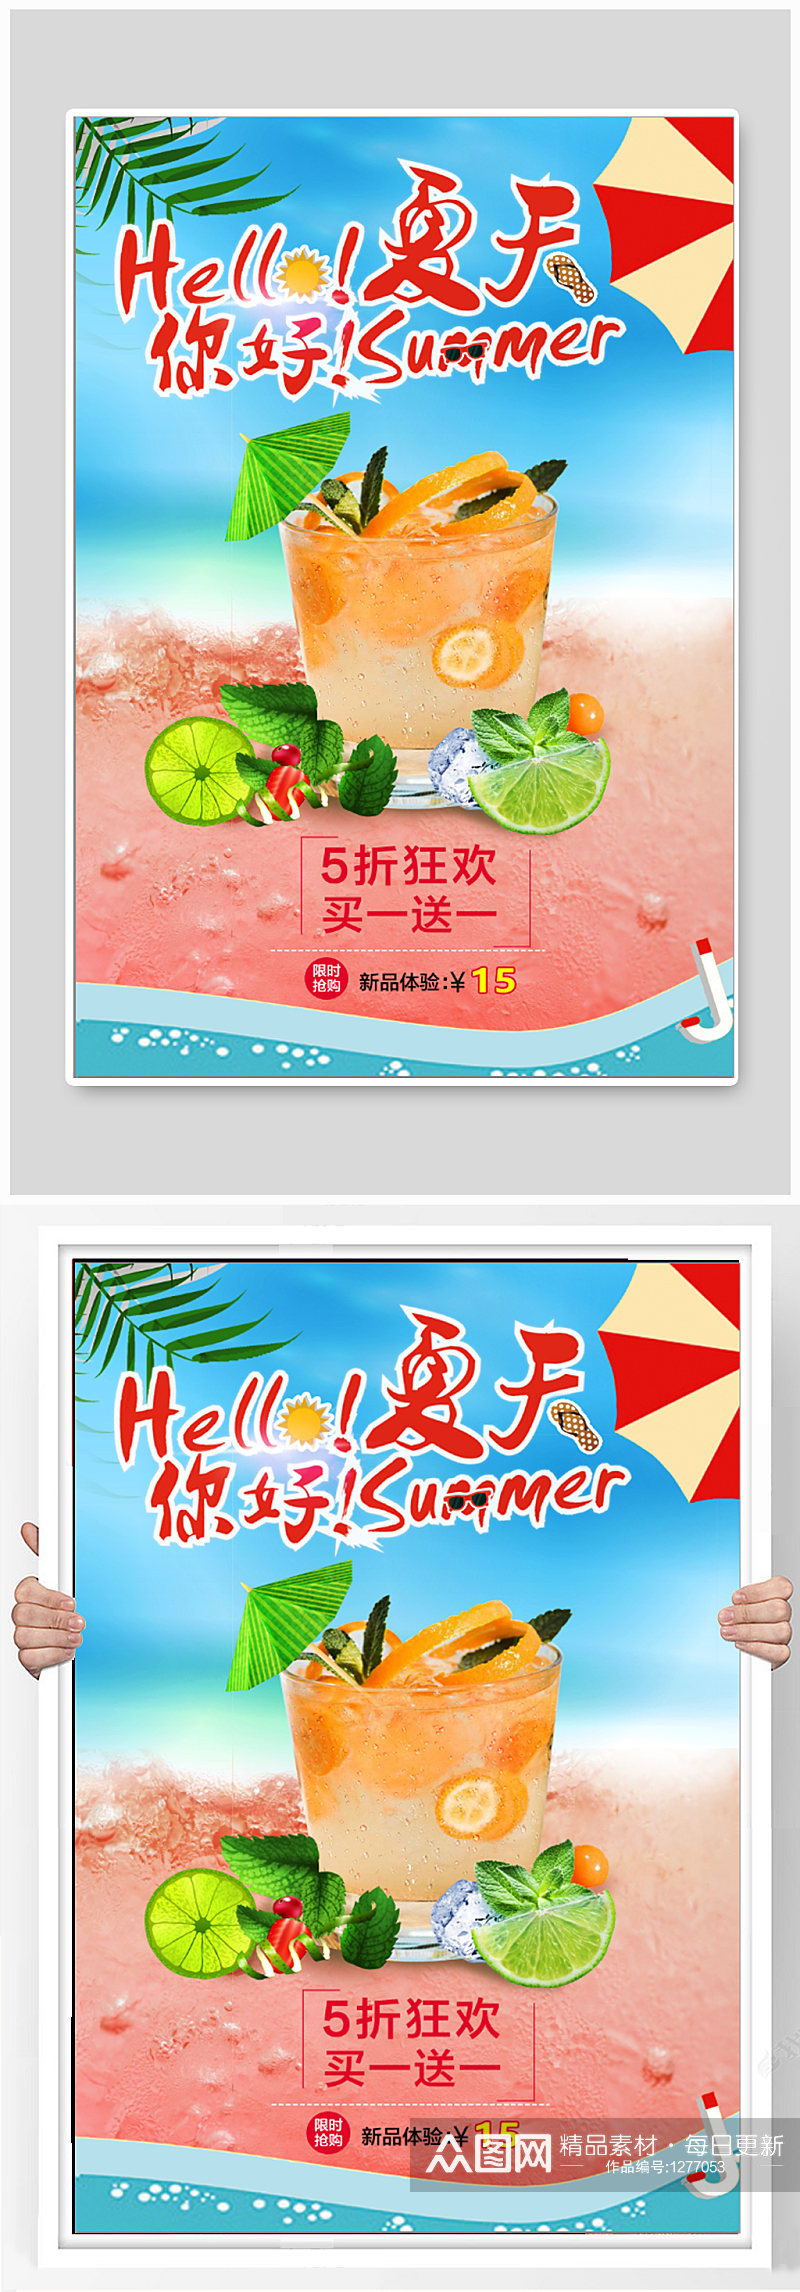 夏季饮品促销海报素材